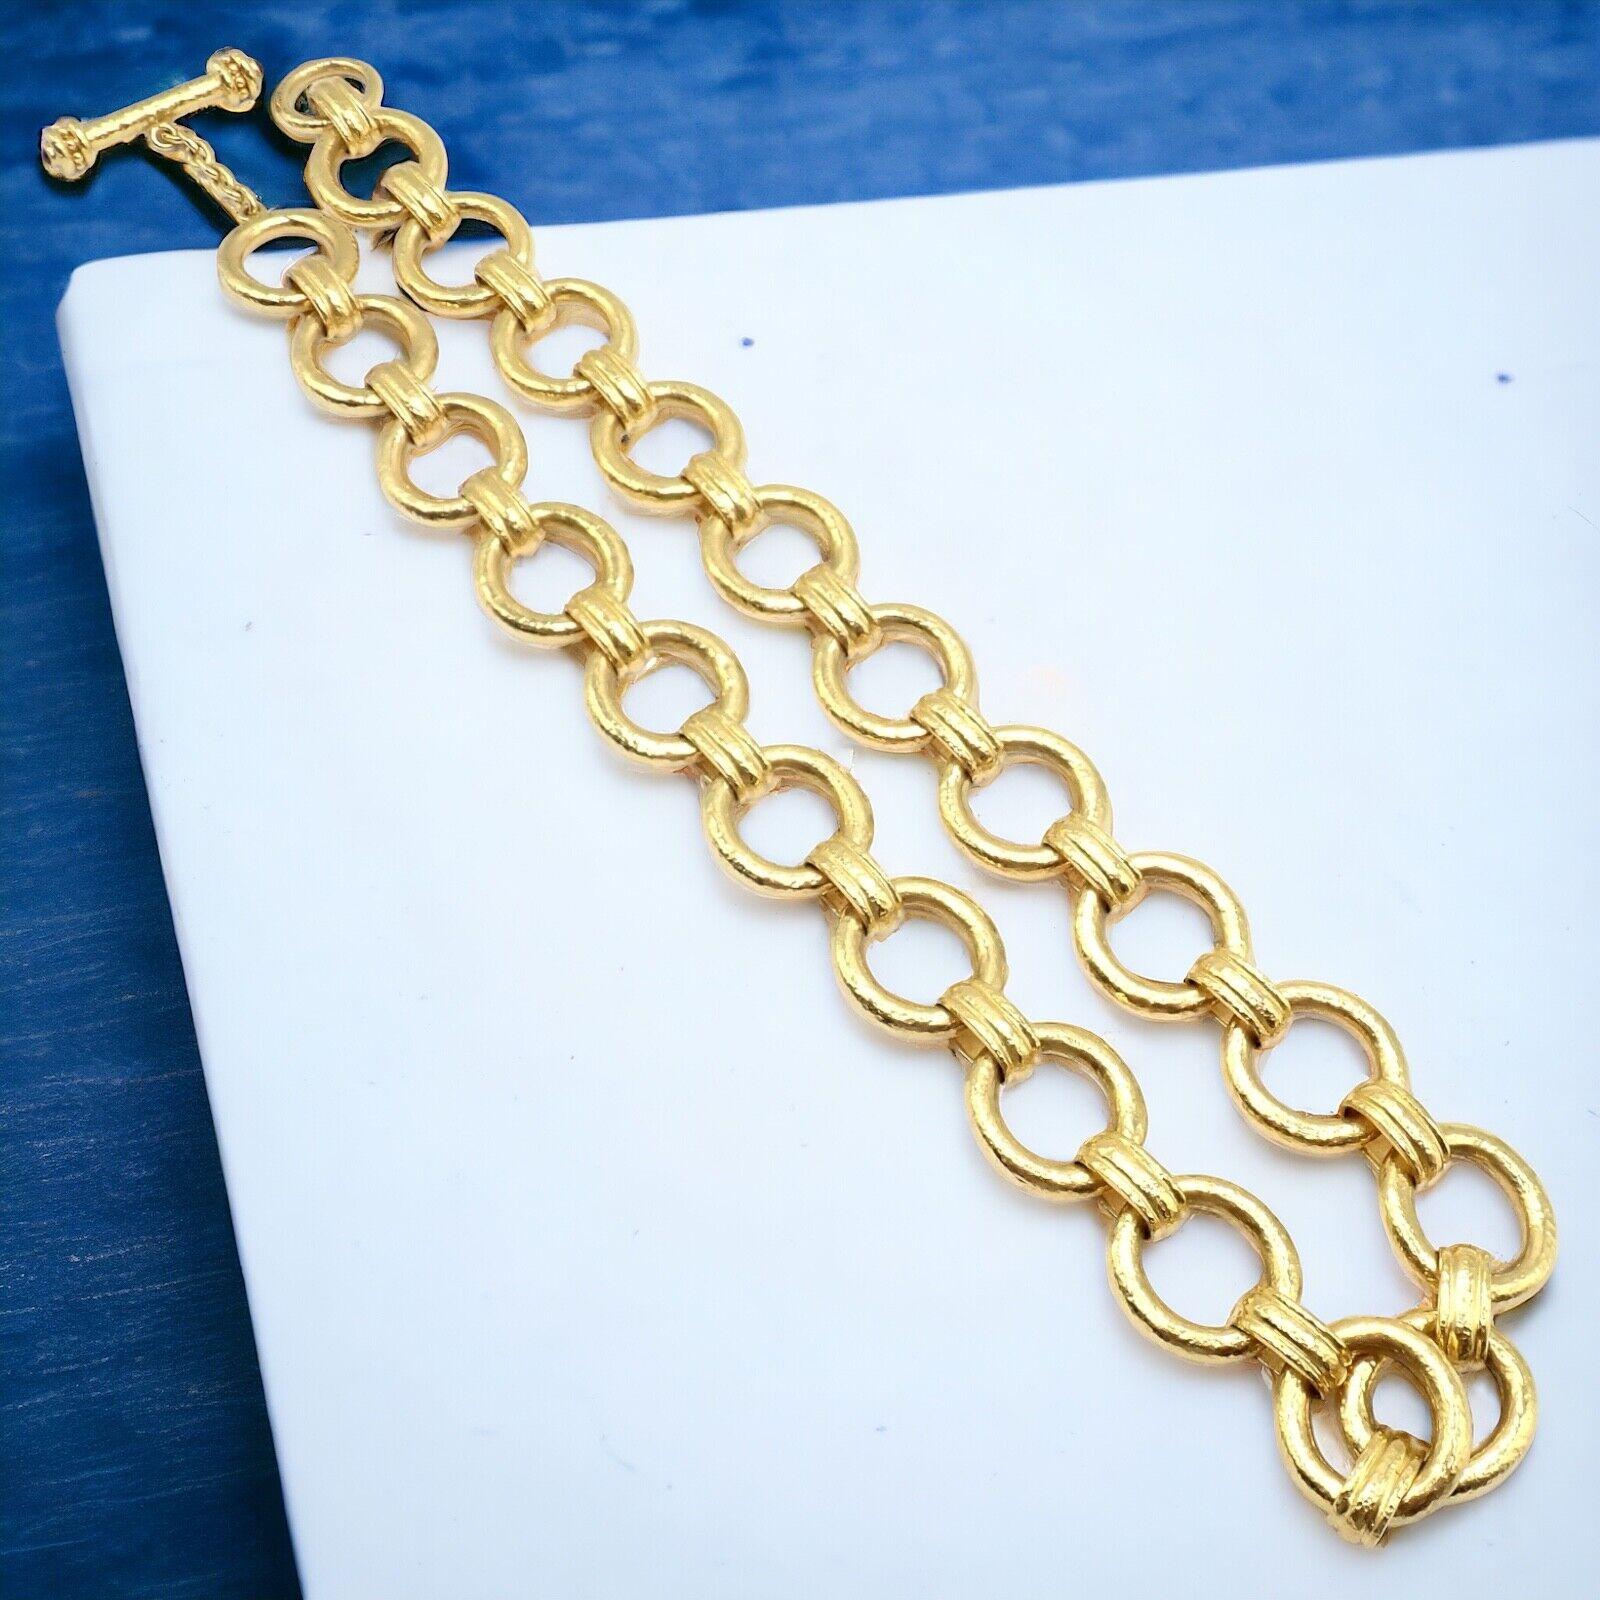 19k Gelbgold Link Halskette von Elizabeth Locke. 
Die Elizabeth Locke 19k Gelbgold Halskette verfügt über ein luxuriöses Toggle Link Design, Stretching 21 Zoll in der Länge. 
Verziert mit reichhaltigen, strahlenden Rubinen am Knebel.
Dieses Stück